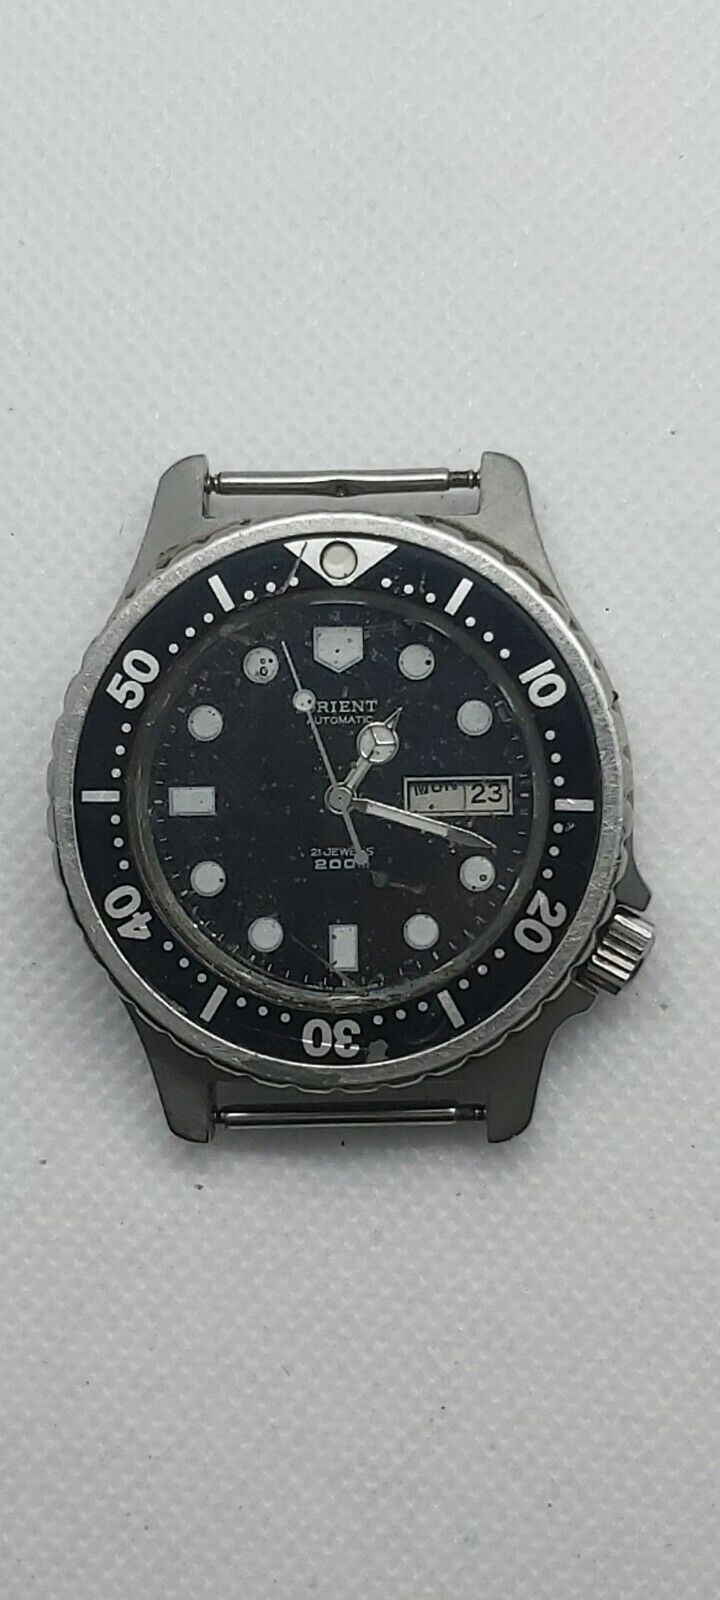 Vintage ORIENT Automatic Diver Watch 200M 469EF3-80